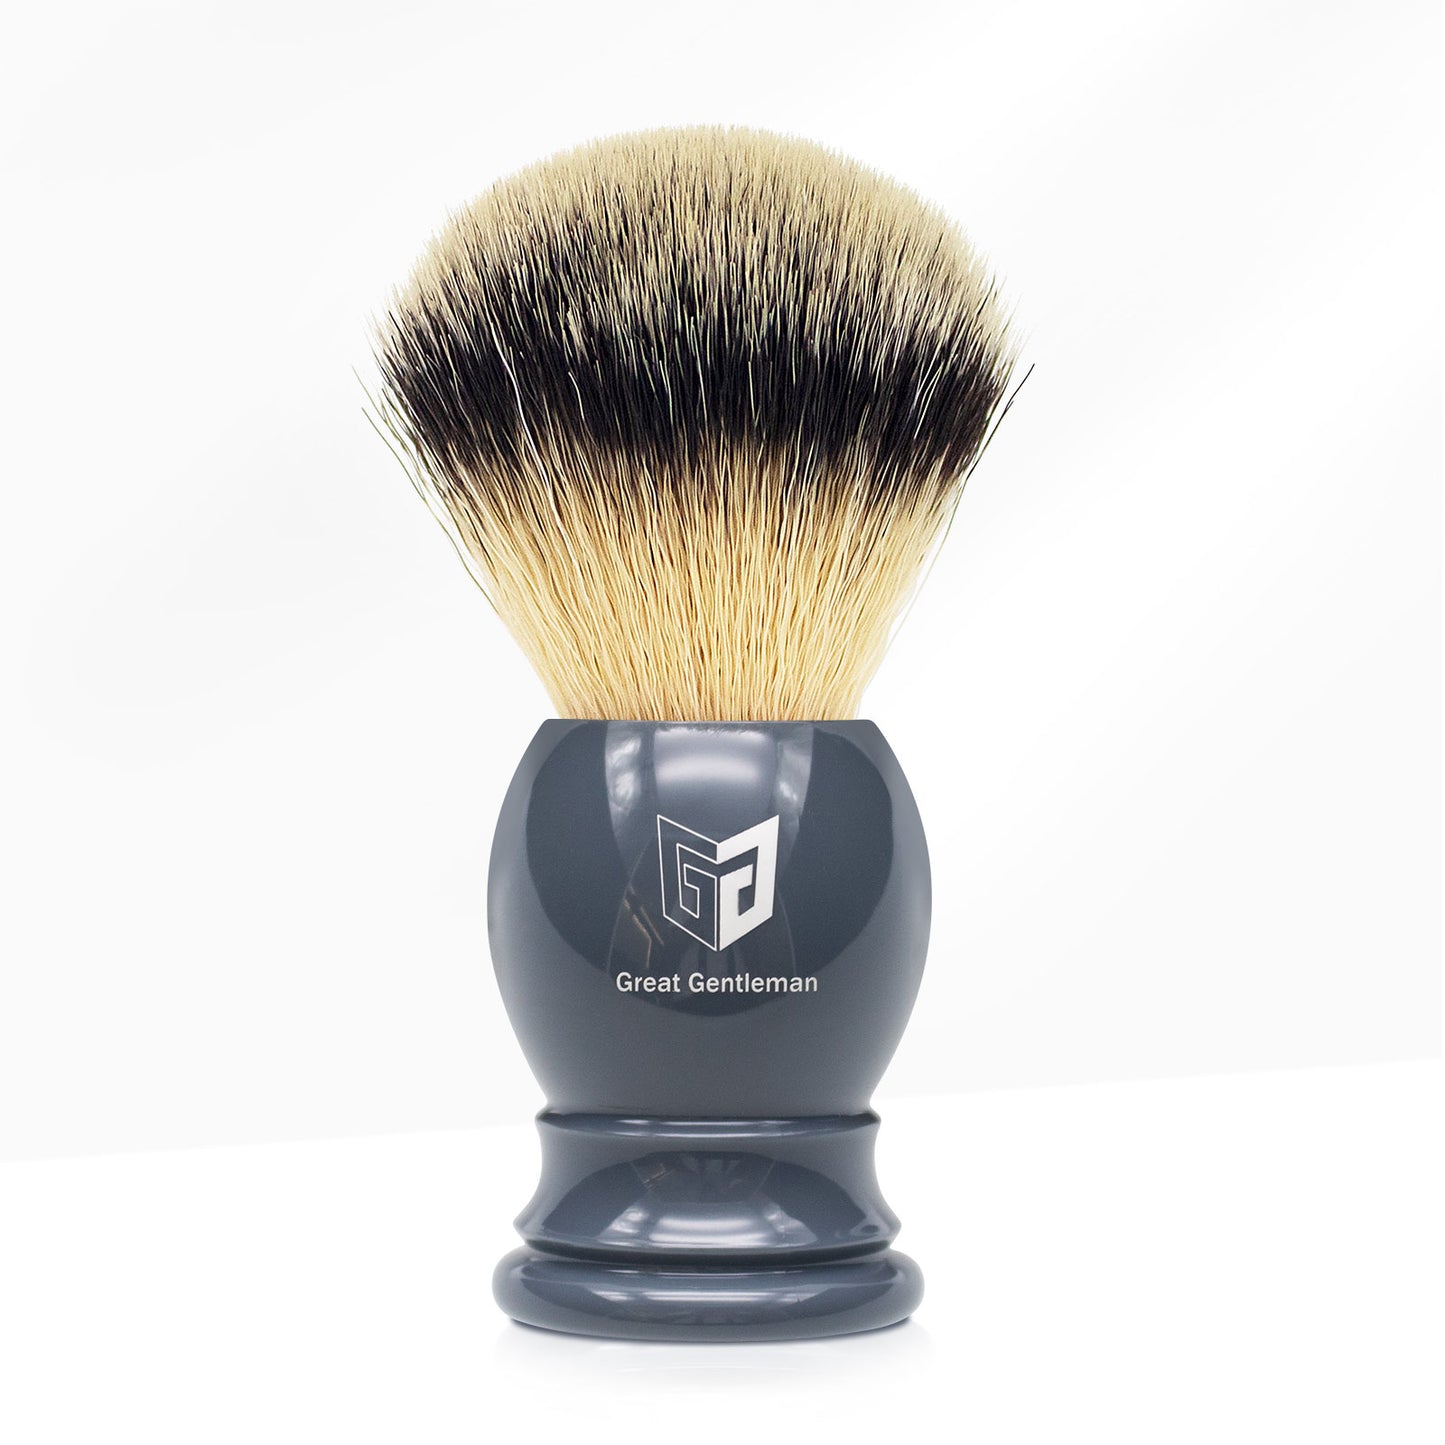 GG Shaving Brush｜Nylon Hair｜Grey Acrylic Handle